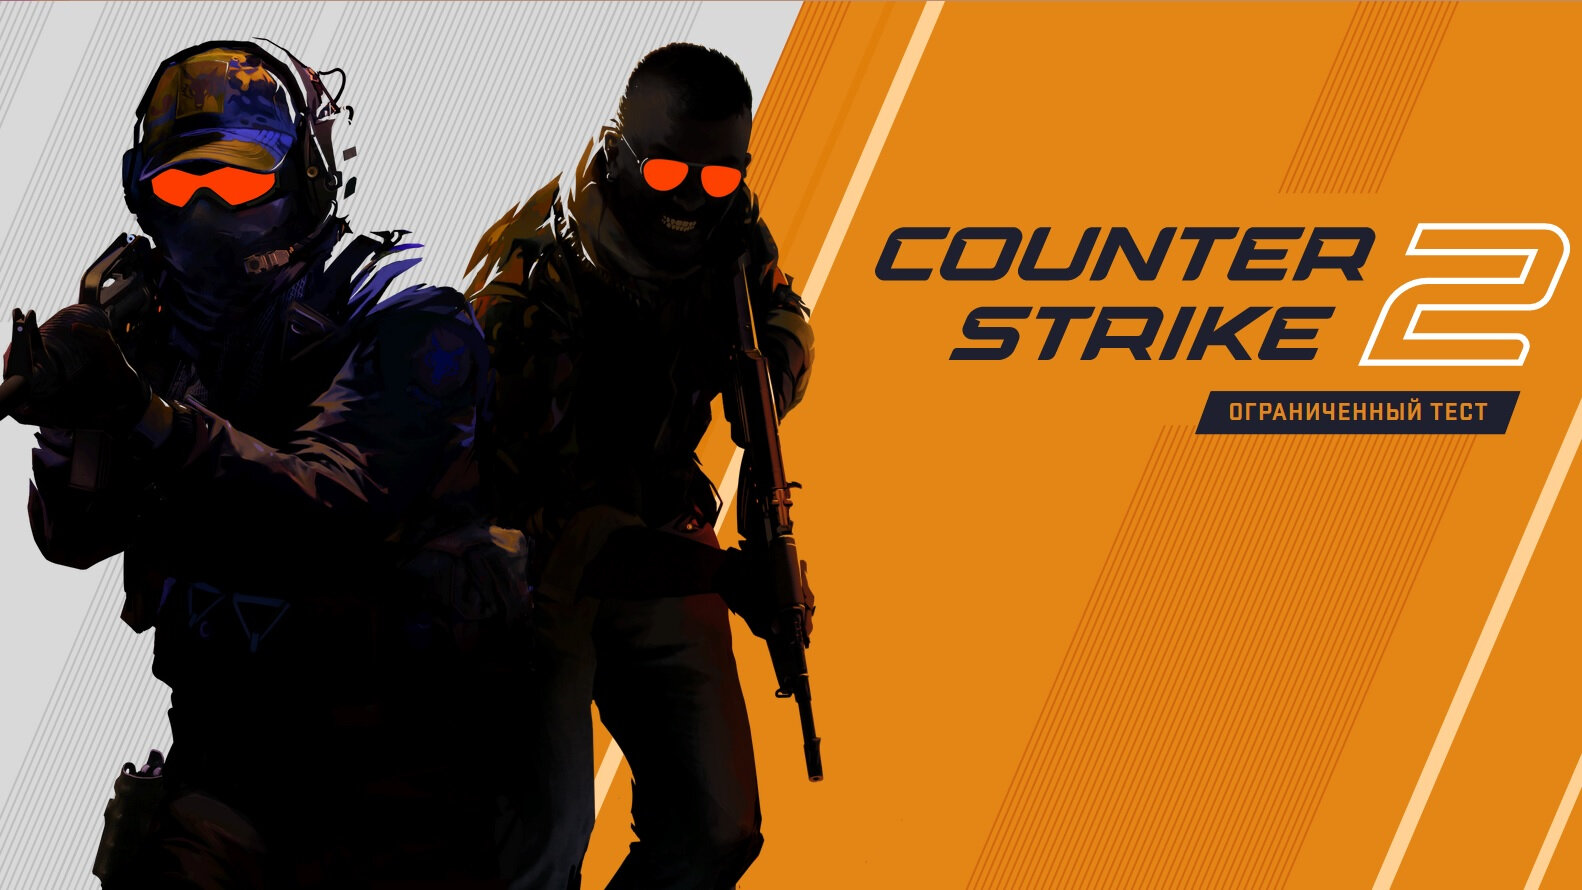 Представлена Counter-Strike 2: с новой графикой, физикой и картами